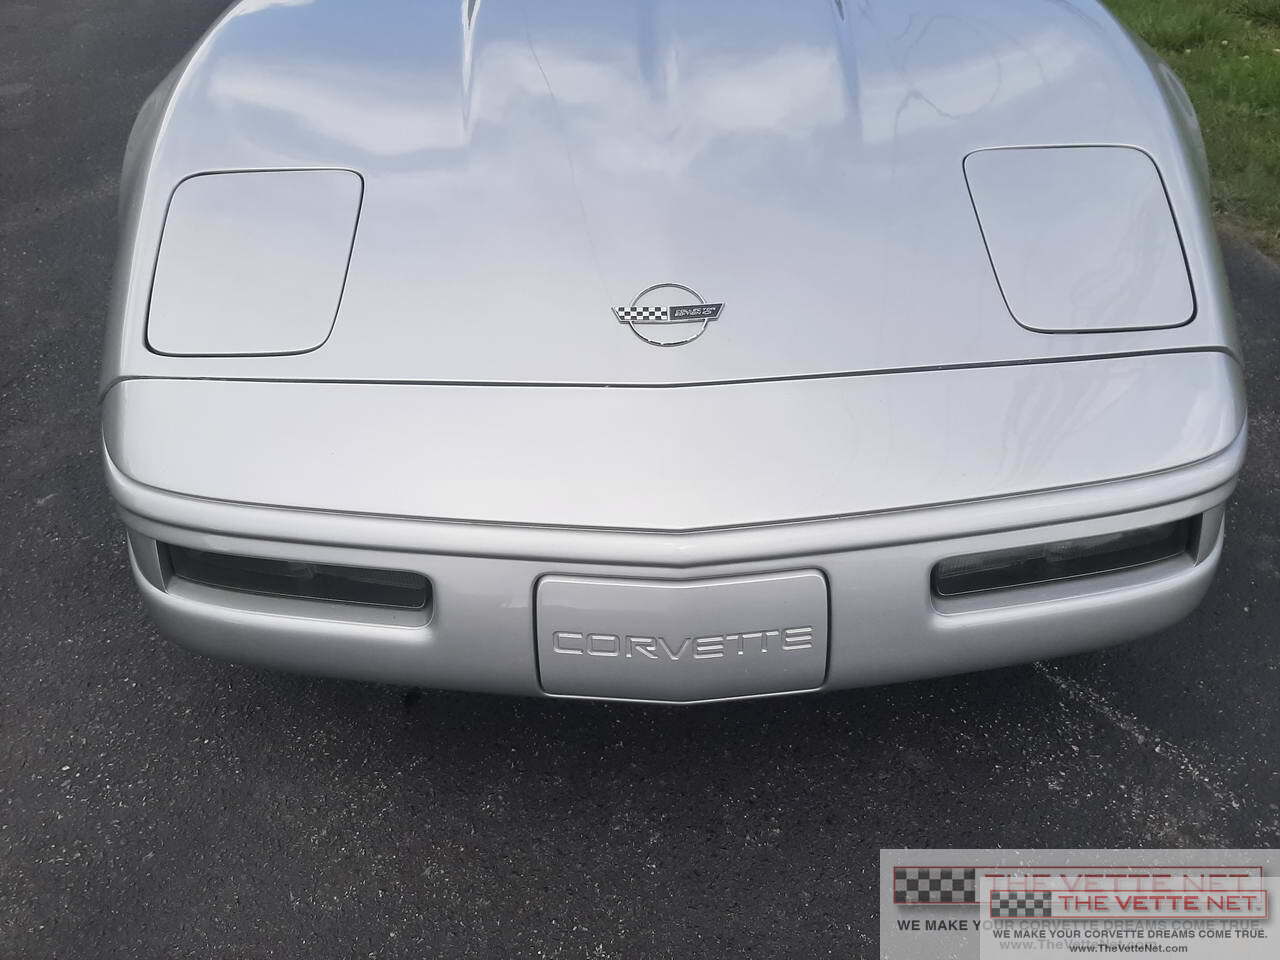 1996 Corvette Coupe Sebring Silver